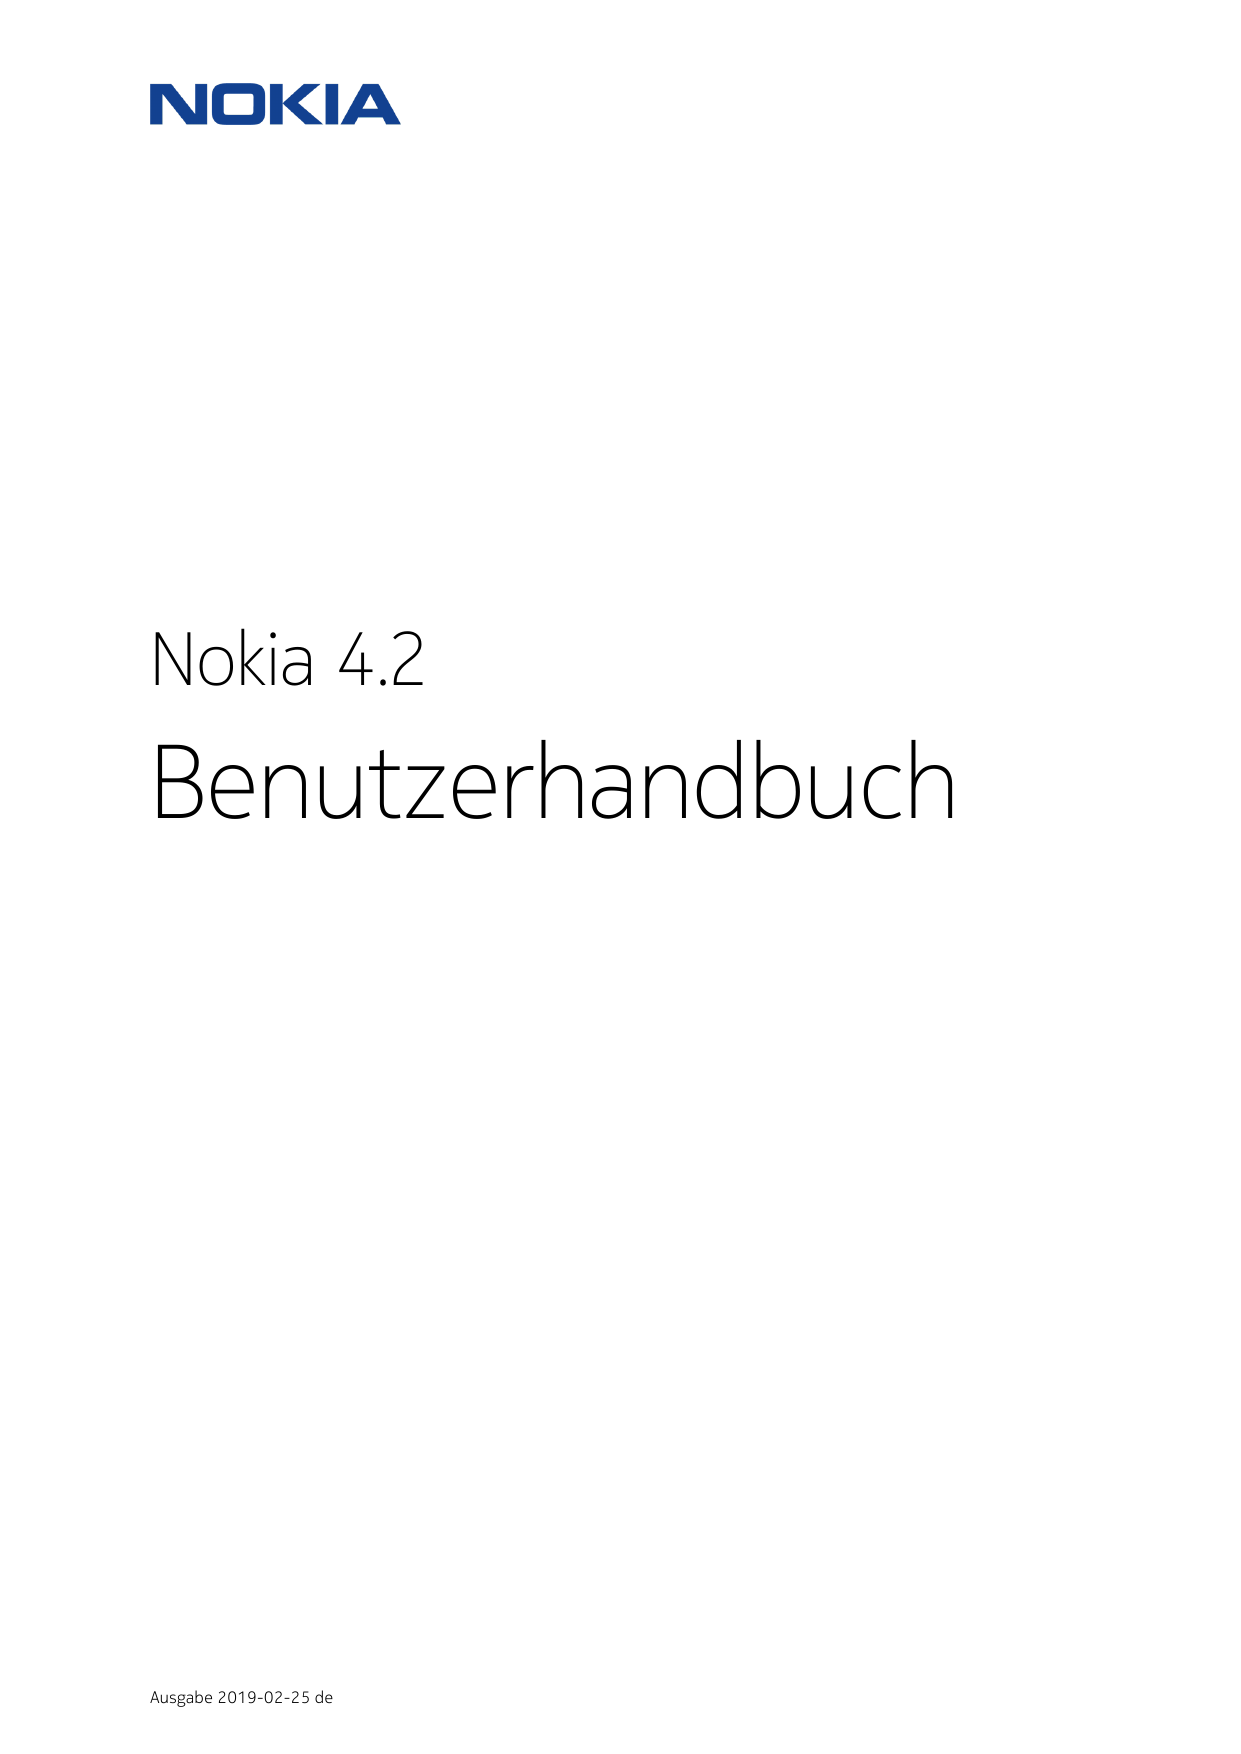 Nokia 4.2BenutzerhandbuchAusgabe 2019-02-25 de